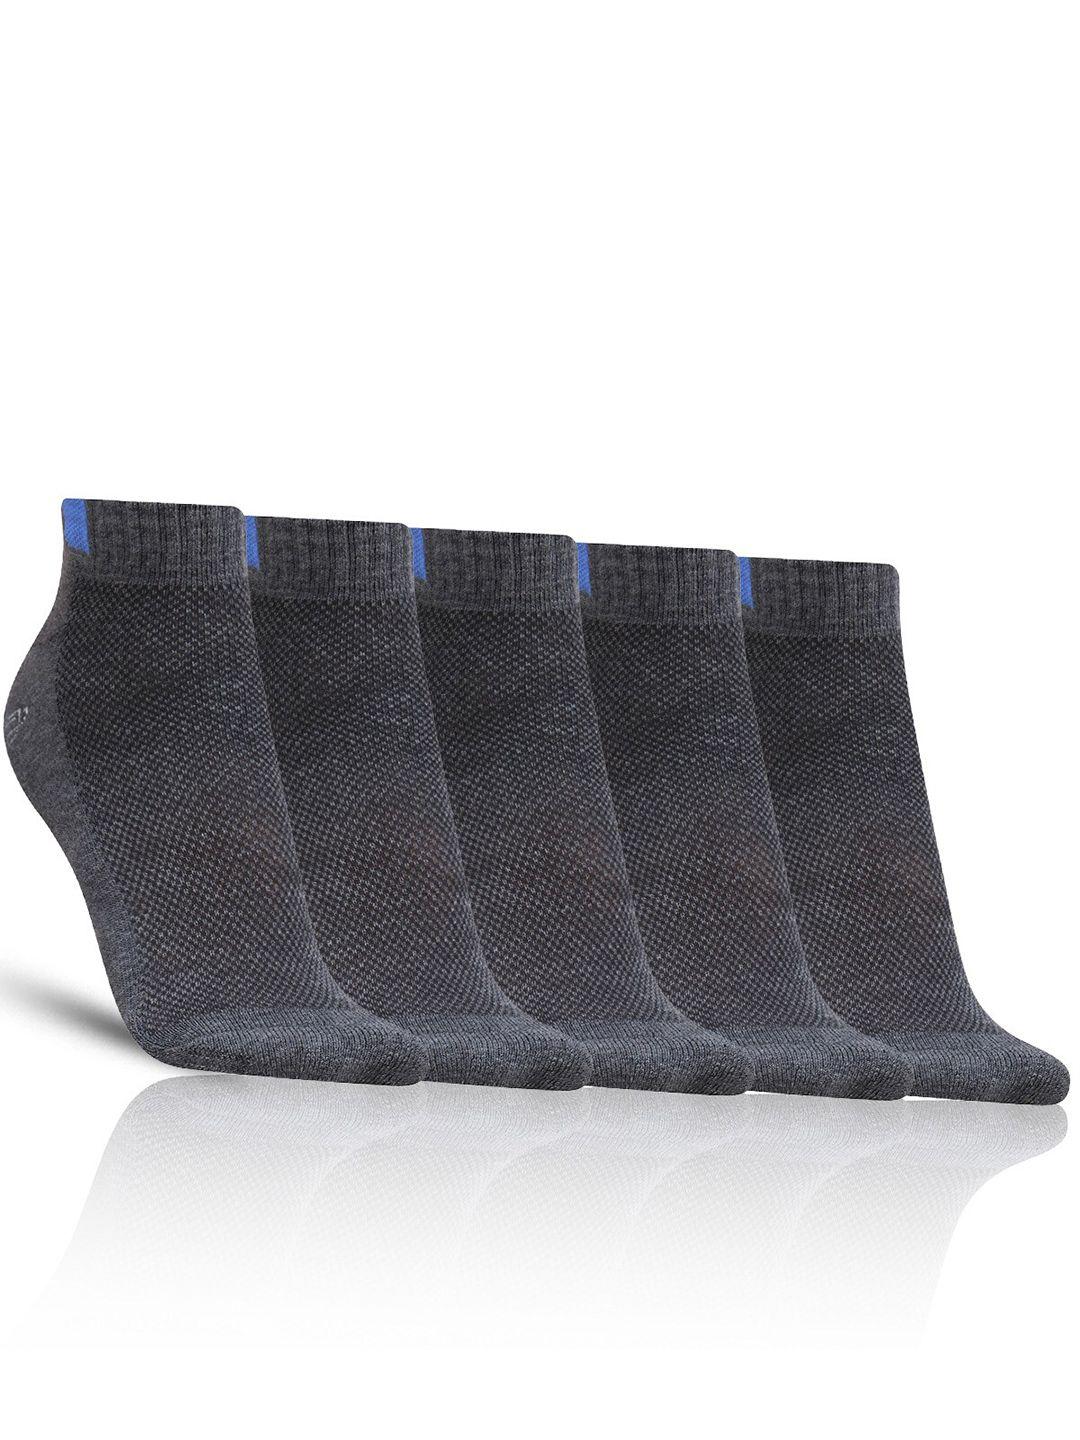 dollar socks men pack of 5 patterned cotton ankle-length socks